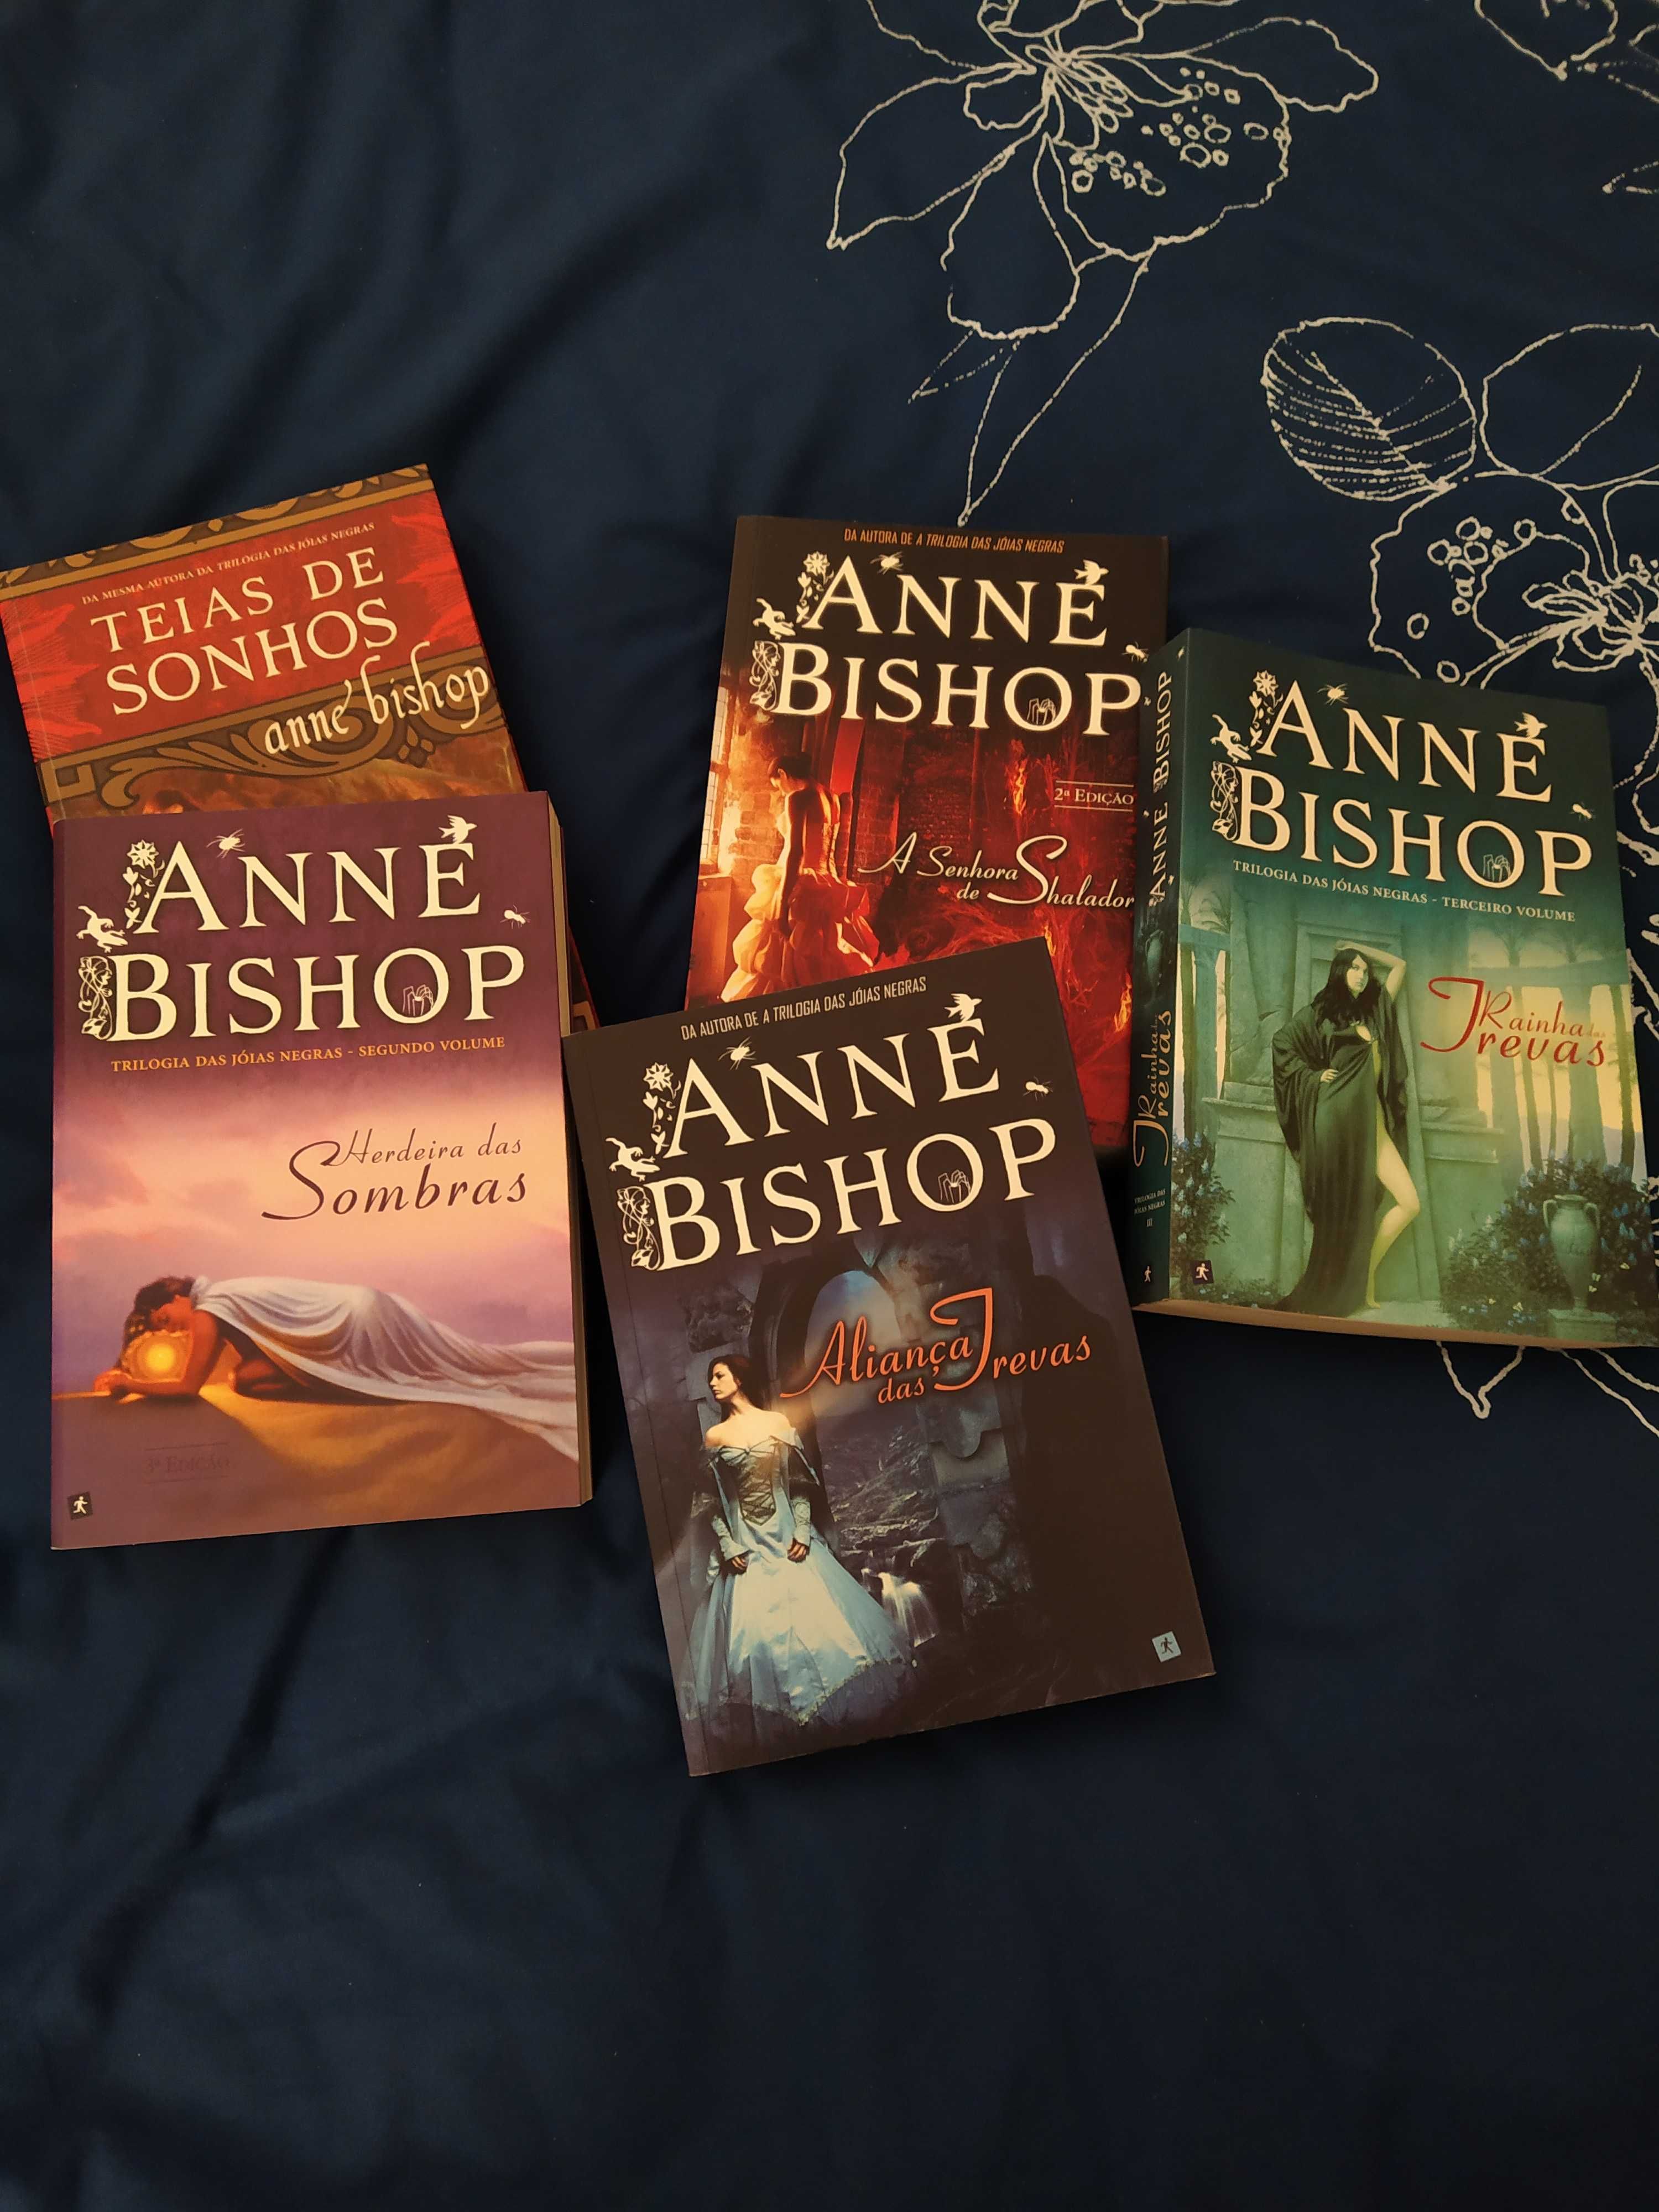 Anne bishop livros